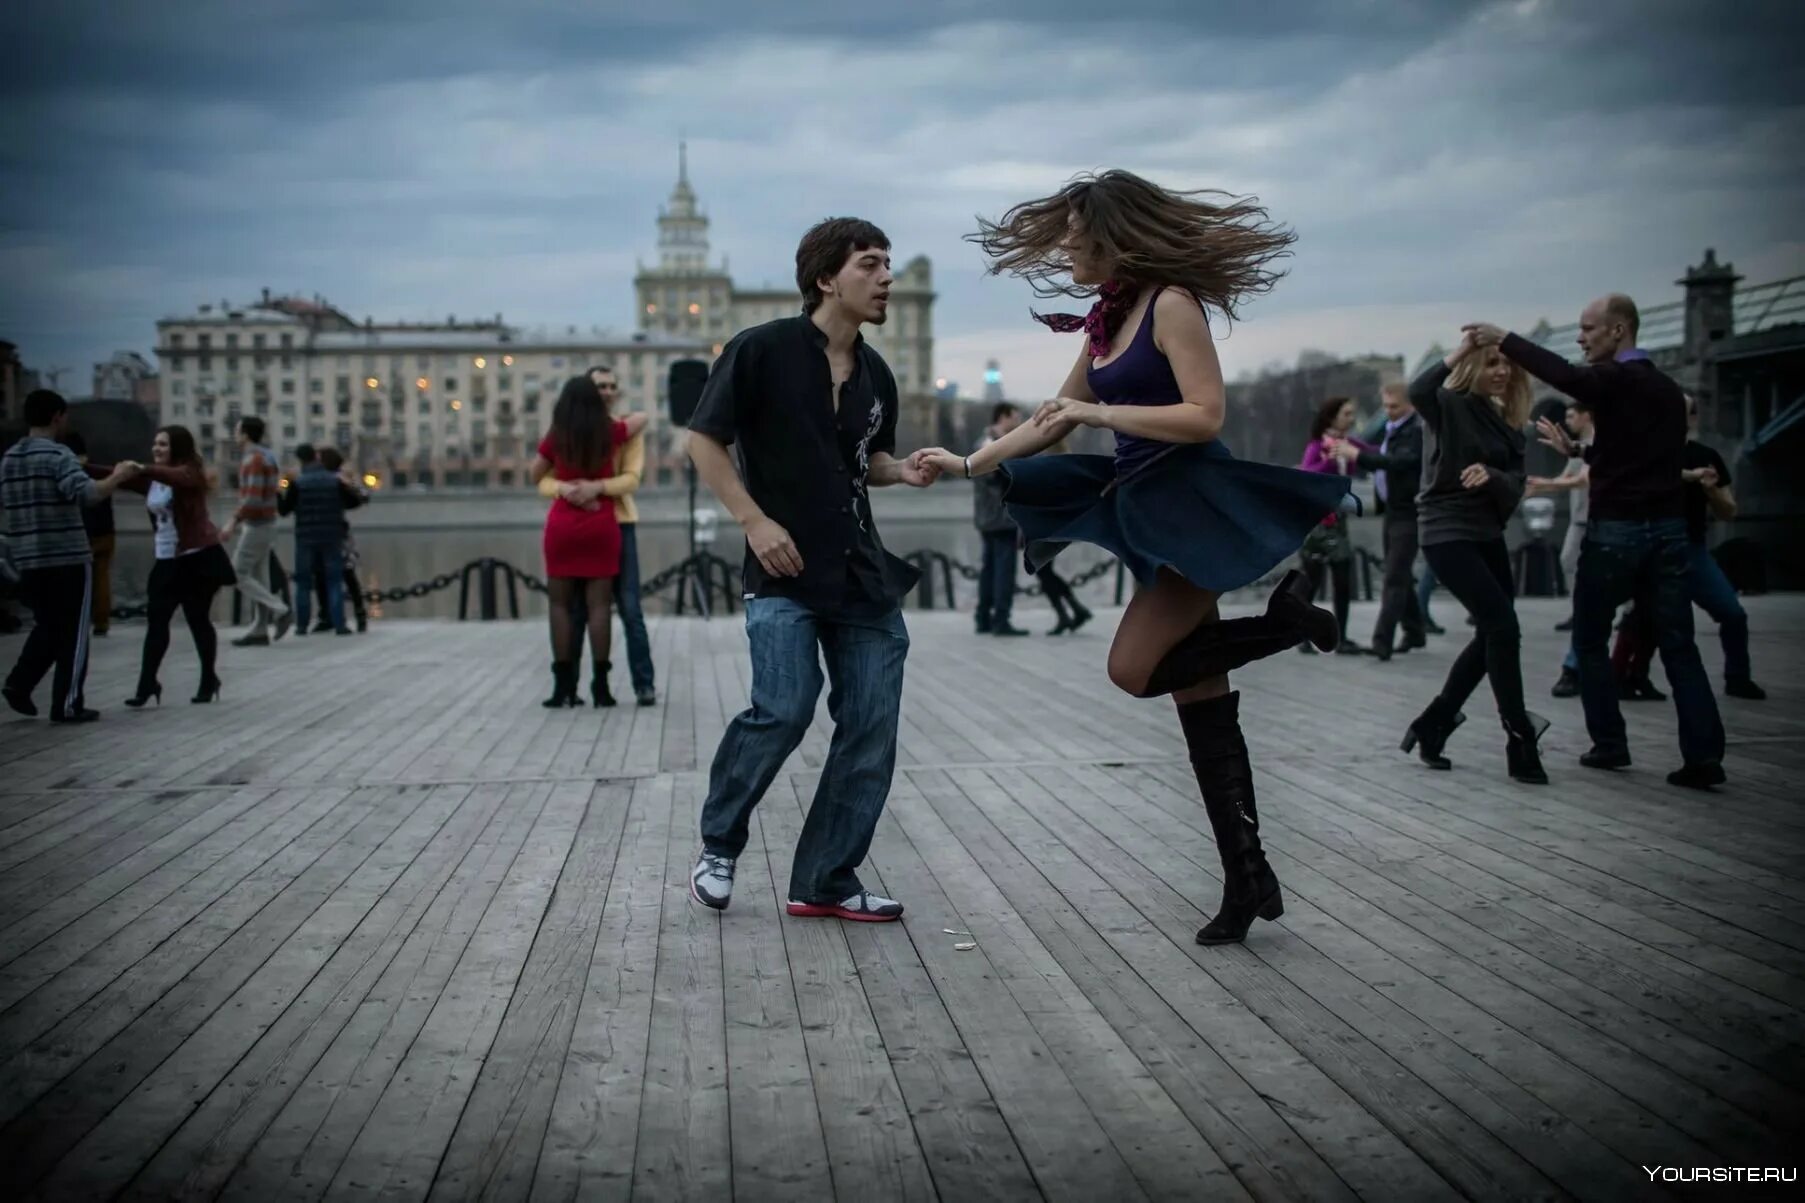 Песню где танцуют люди. Люди танцуют. Танцы на улице. Парень и девушка танцуют. Танцующие люди на улице.